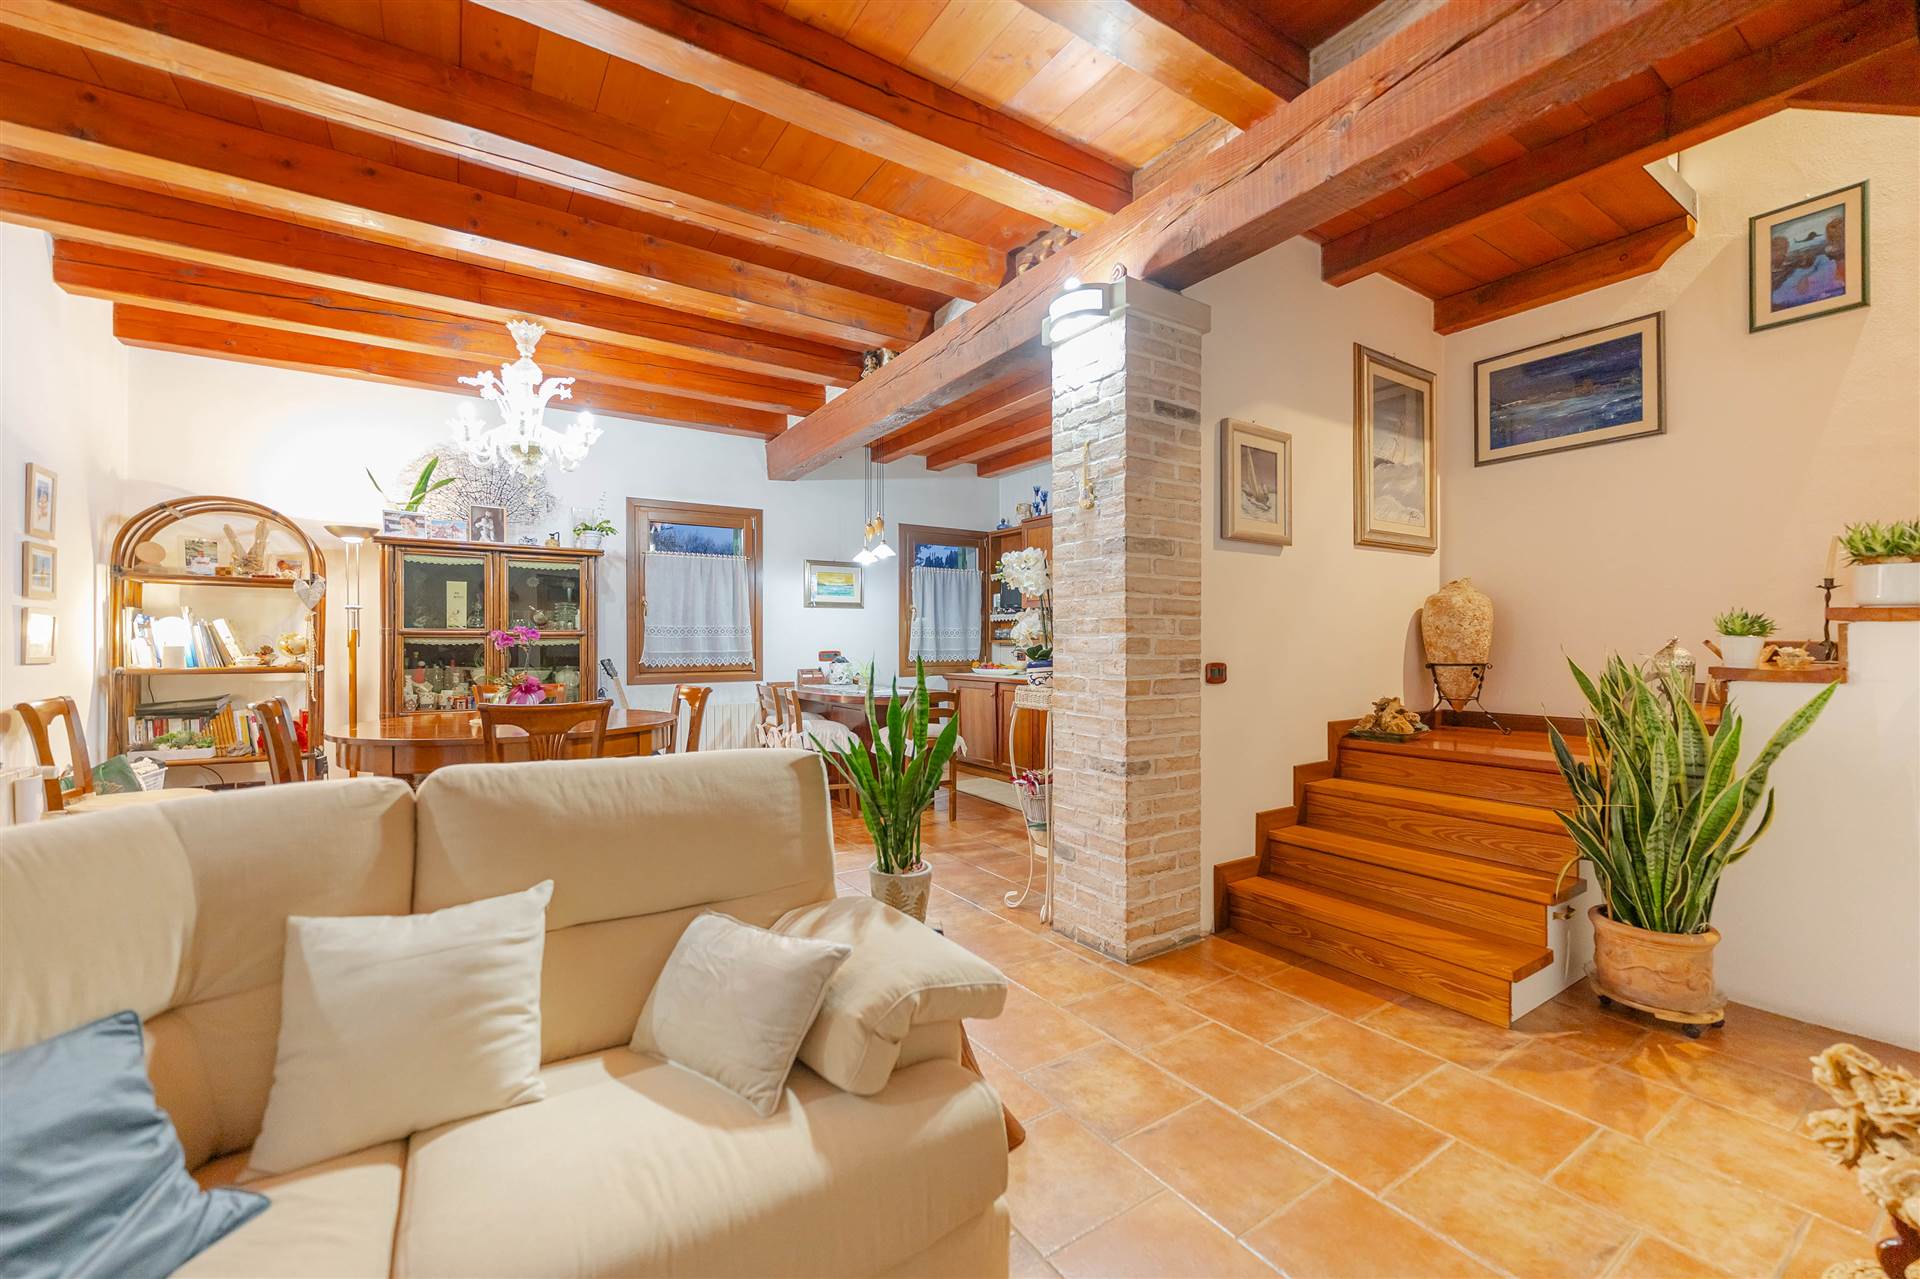 Villa Bifamiliare in vendita a Mirano, 5 locali, prezzo € 360.000 | PortaleAgenzieImmobiliari.it